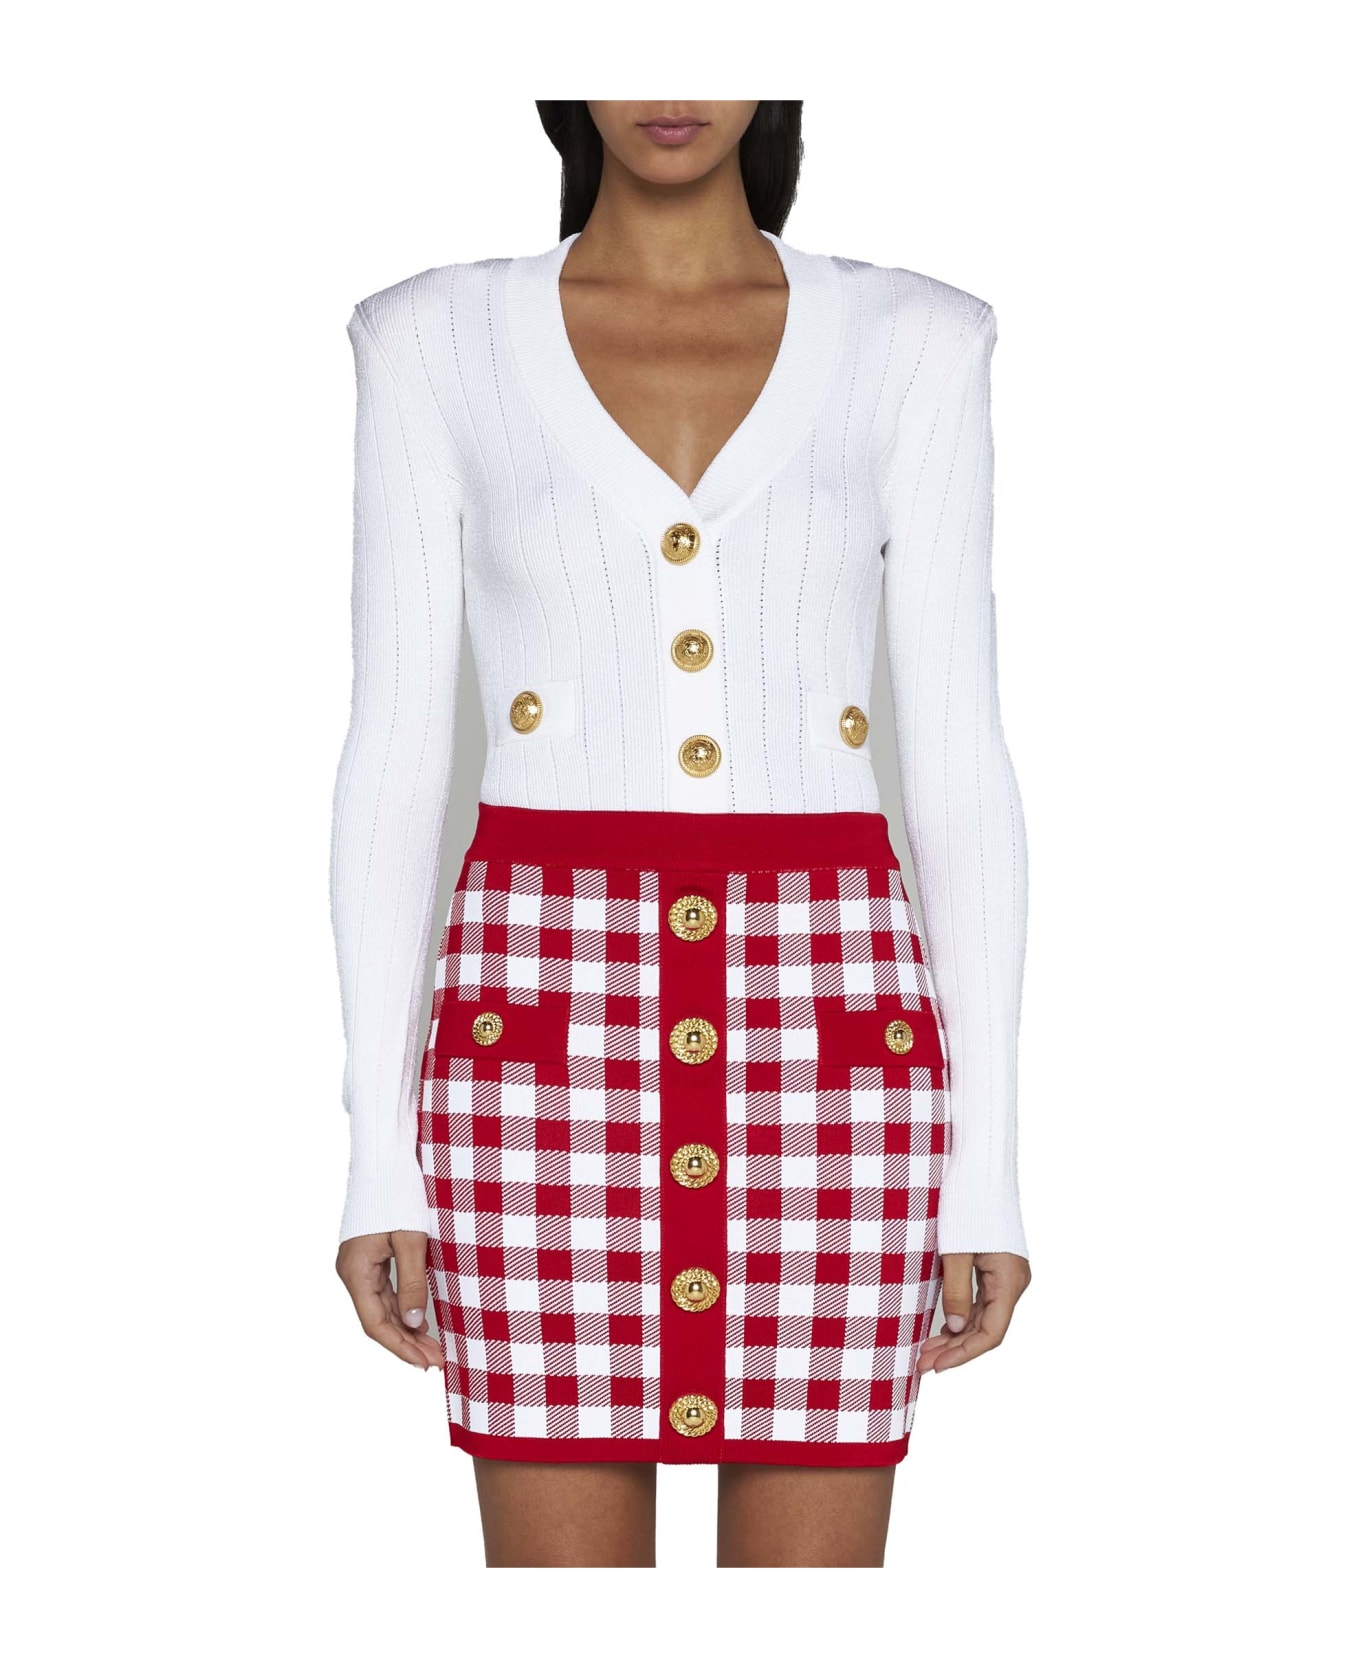 Balmain Viscose-blend Knit Miniskirt - Rouge/blanc スカート